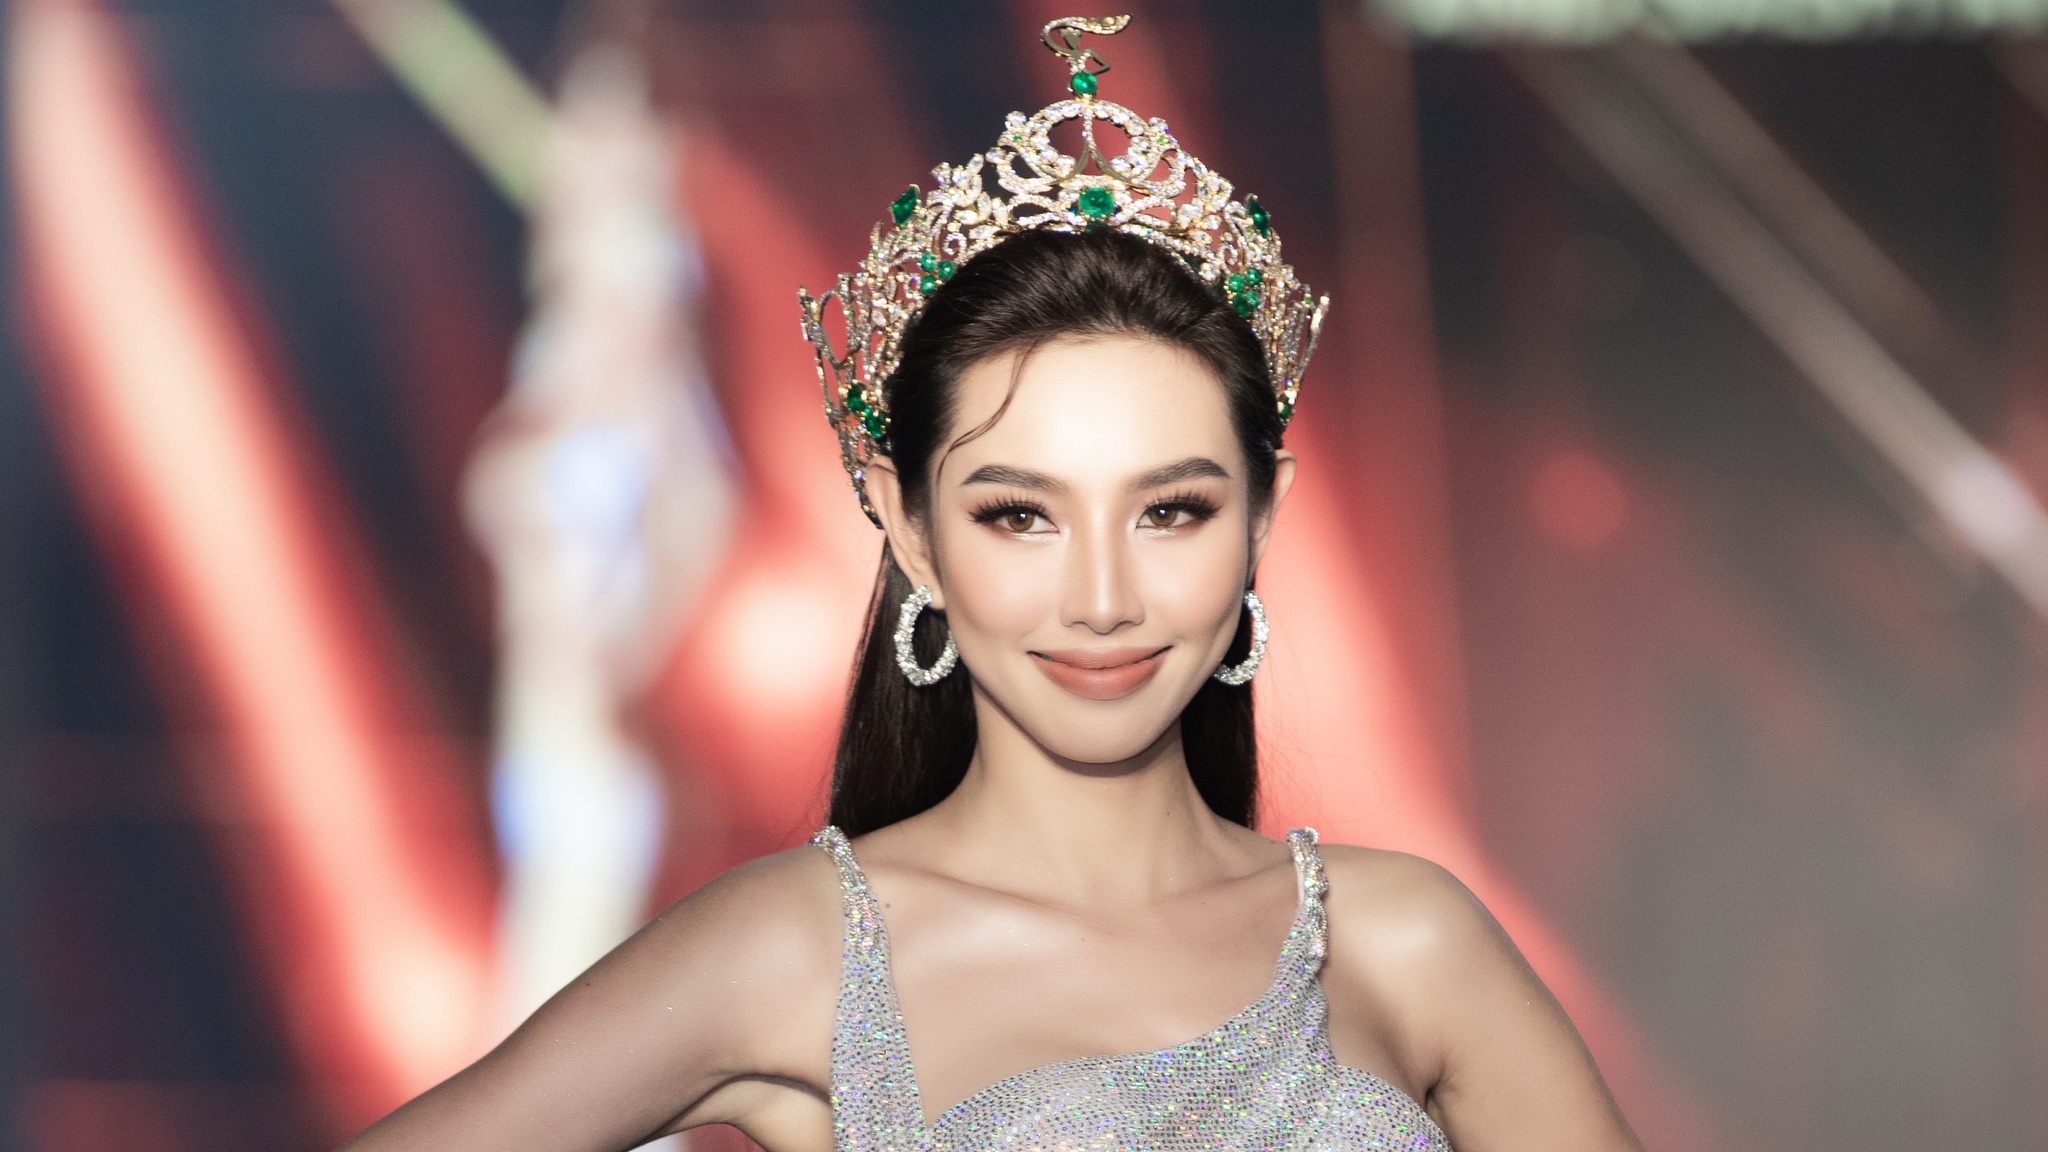 Hoa hậu Thùy Tiên bị réo tên trong đường dây bán dâm 15.000 USD, BTC làm việc với luật sư